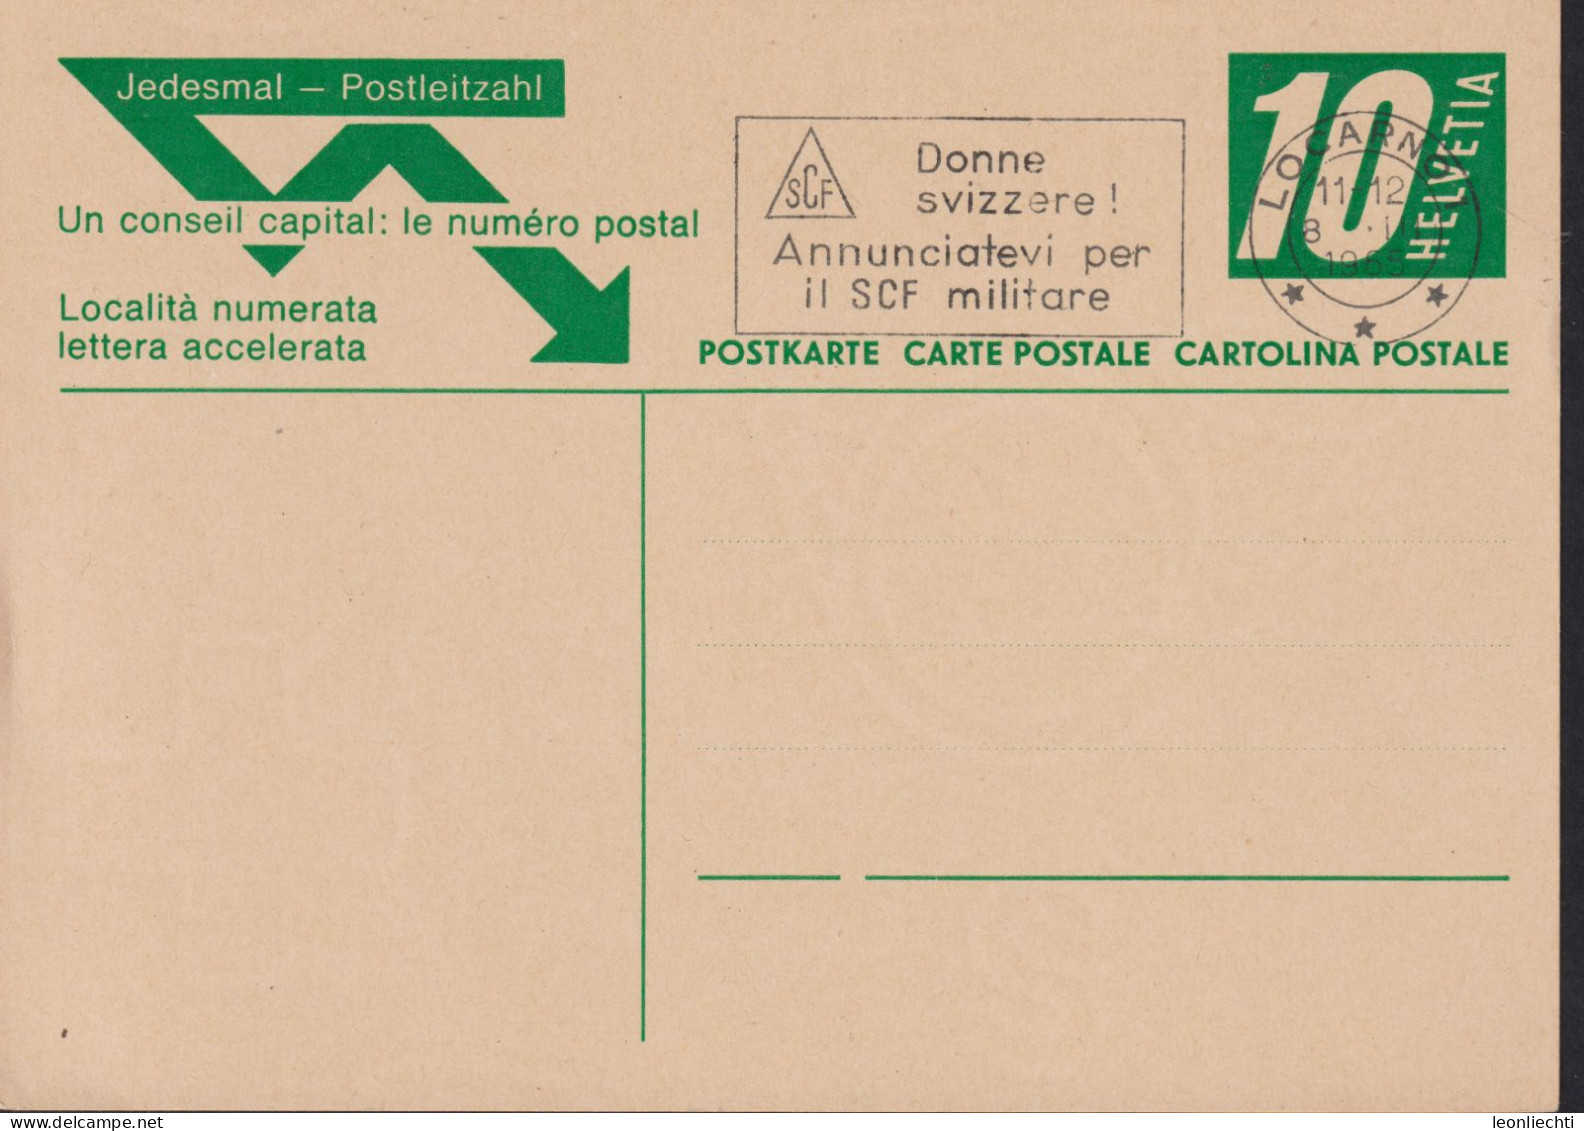 1965 , Jedesmal-Postleitzahl Zum:195 10 Cts  ⵙ LOCARNO 1 Flagg: Donne Svizzere ! Annunciatevi Per Il SCF Militare - Stamped Stationery